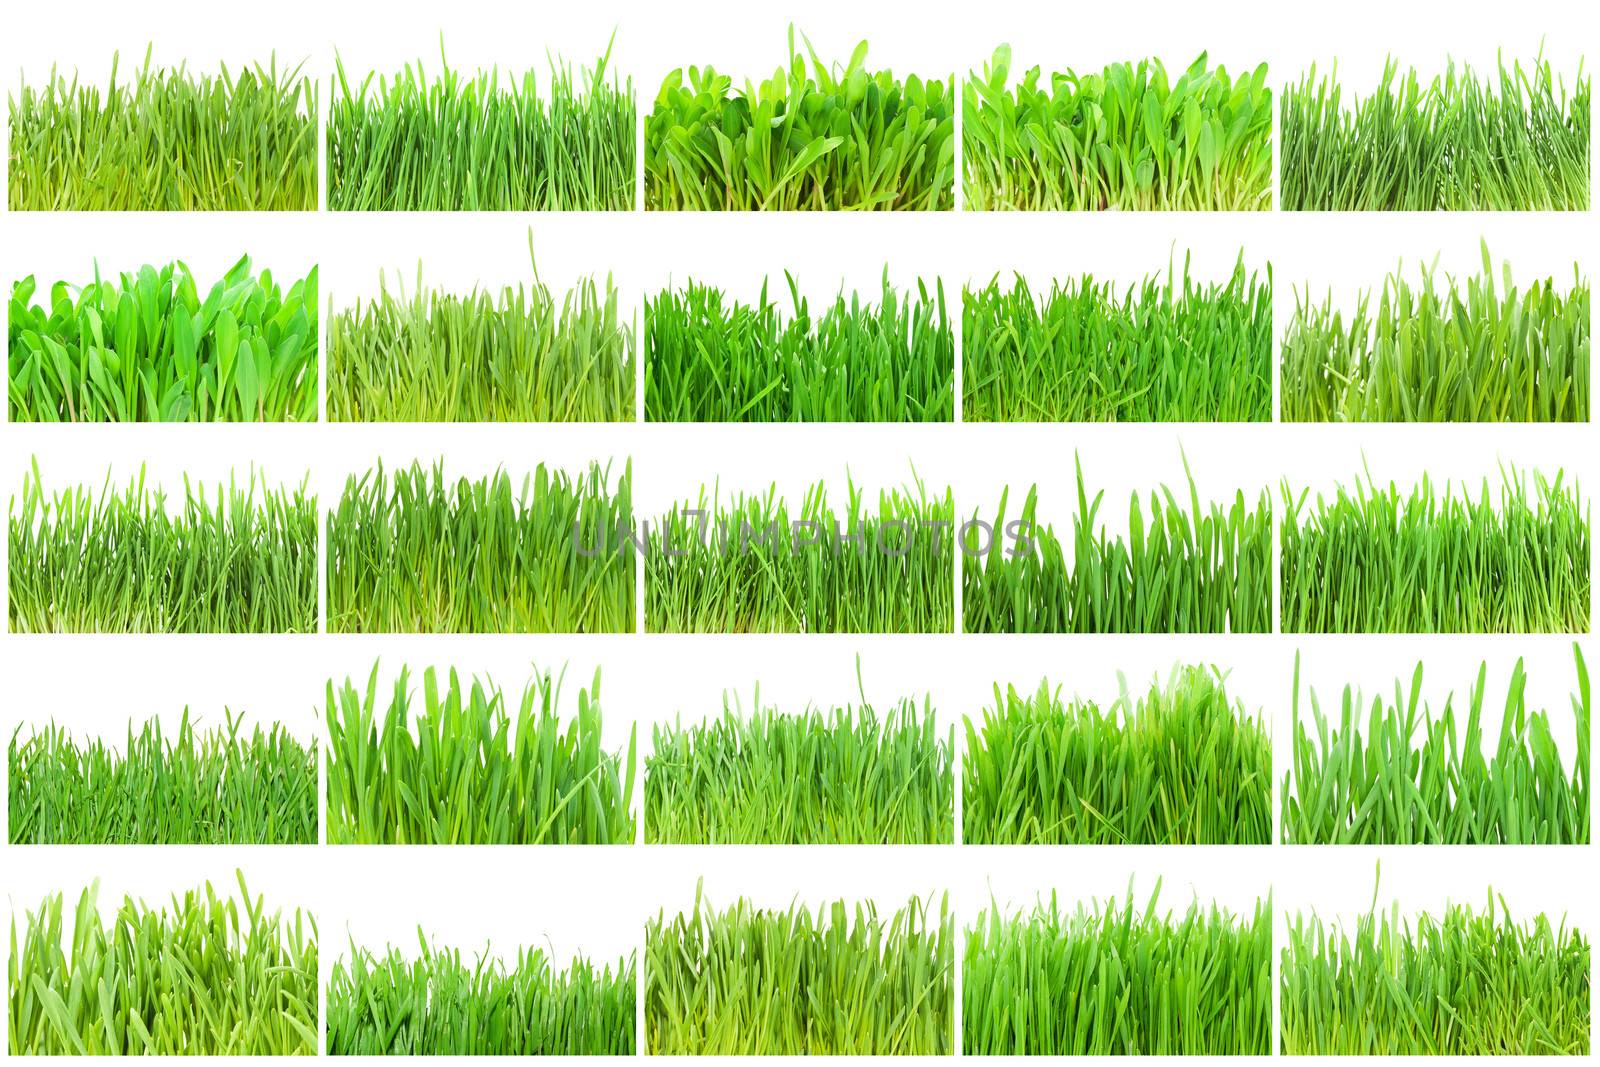 Green grass by sailorr